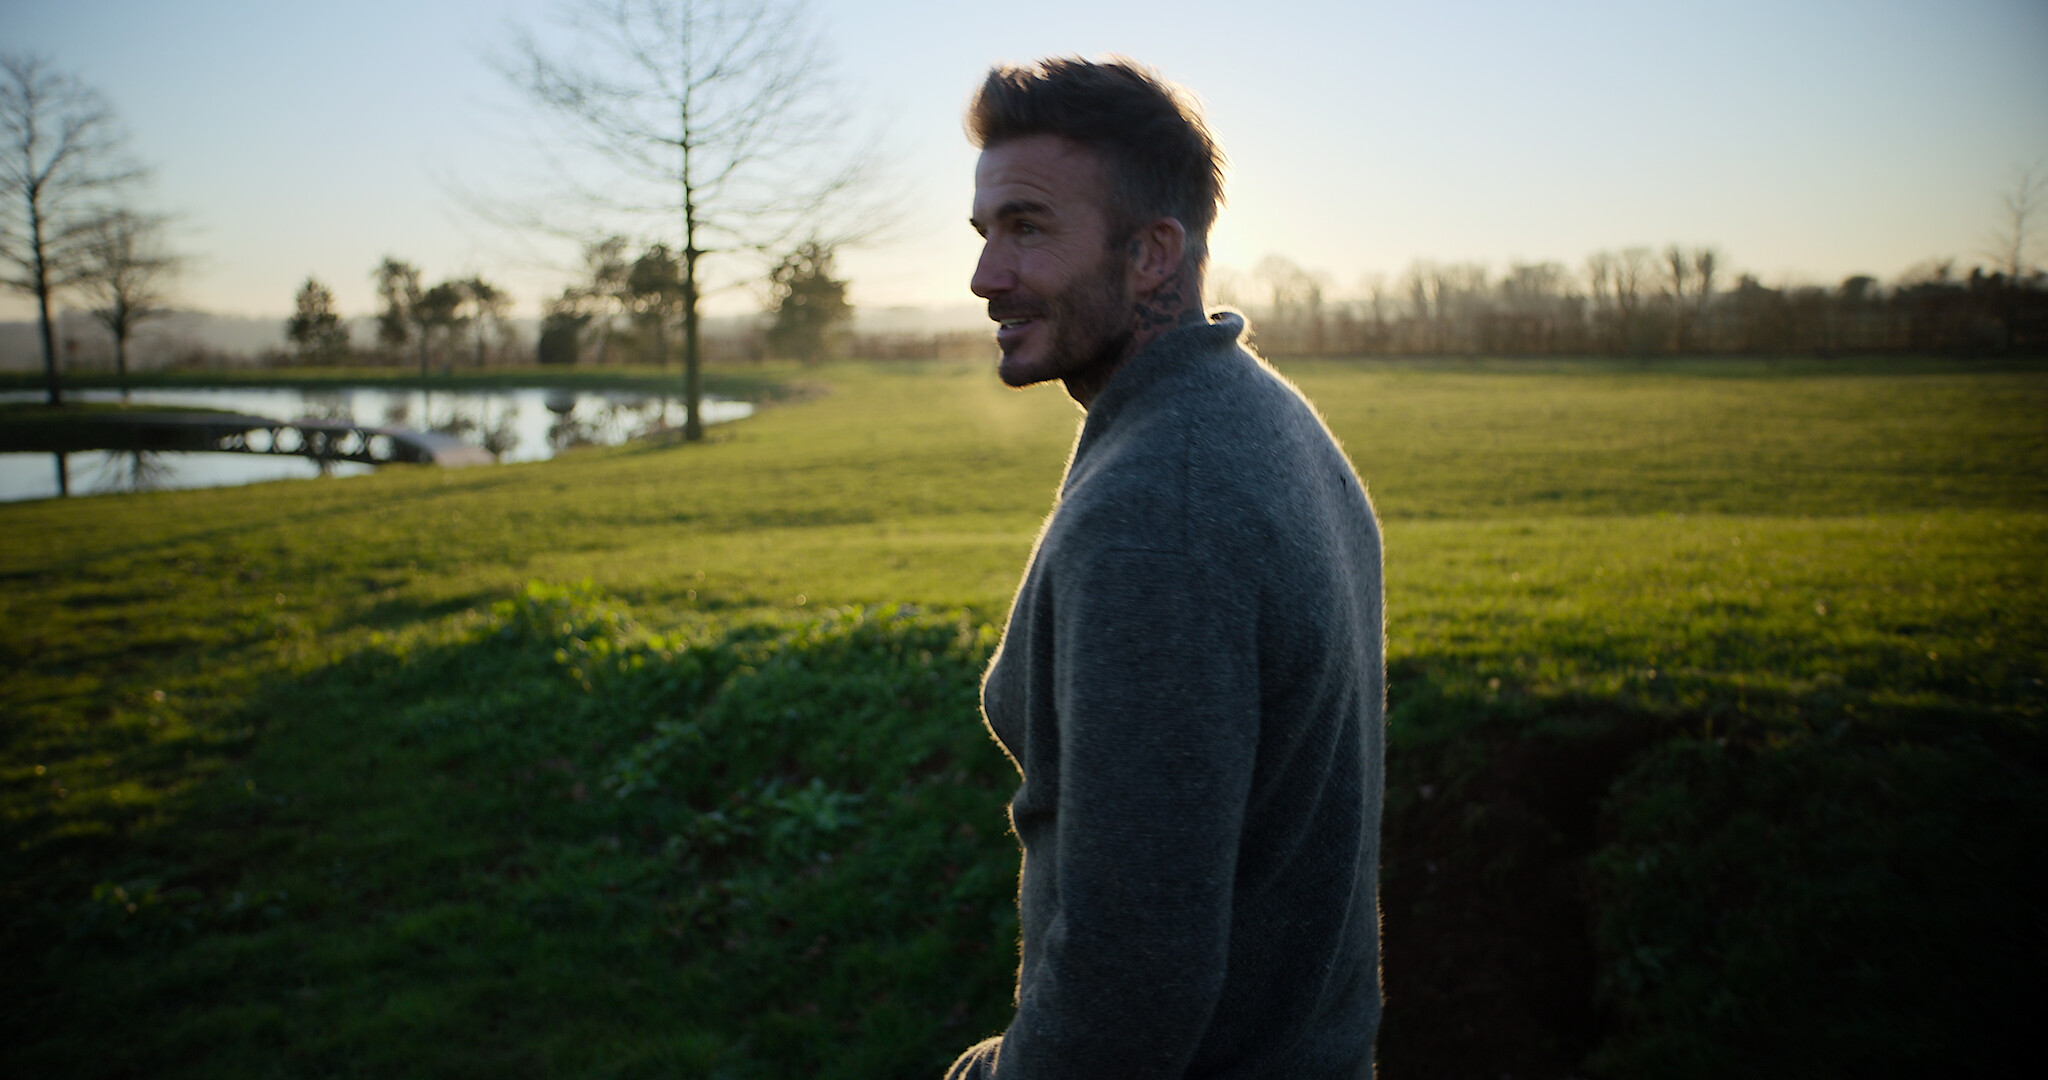 Série documental da Netflix sobre David Beckham estreia dia 4 de